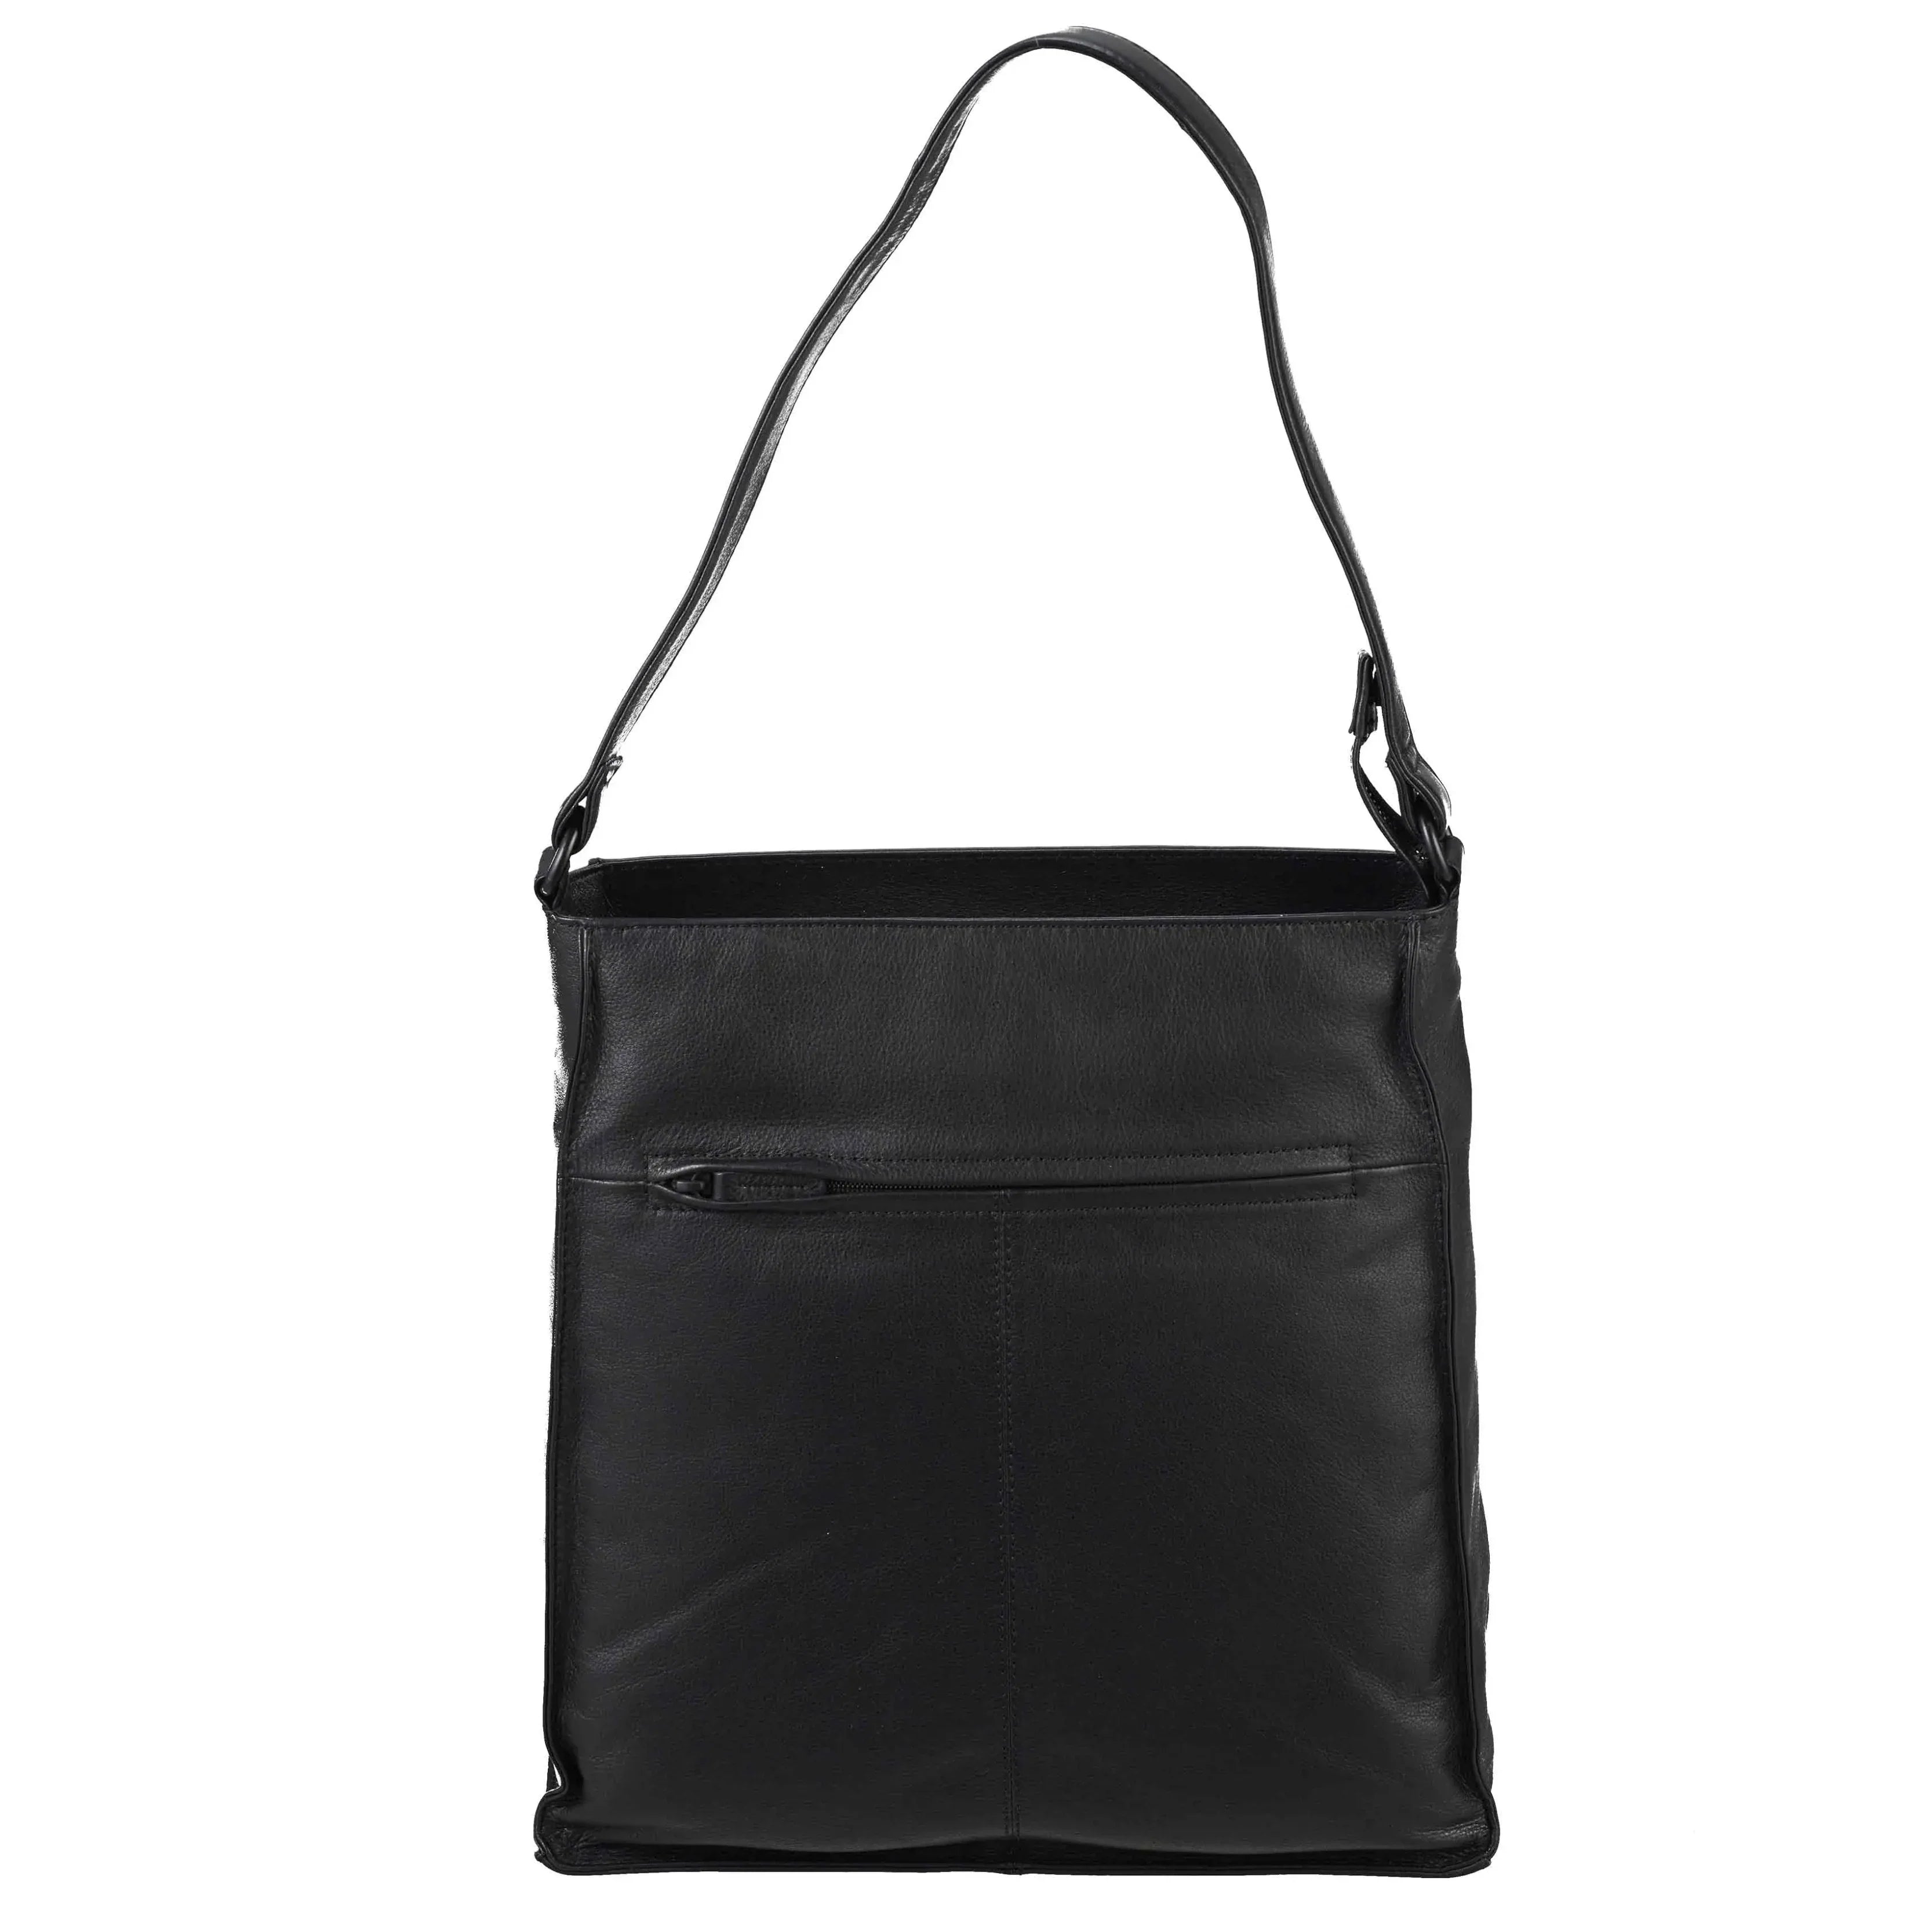 VOi-Design 4 Seasons Donata shoulder bag 35 cm - Platinum